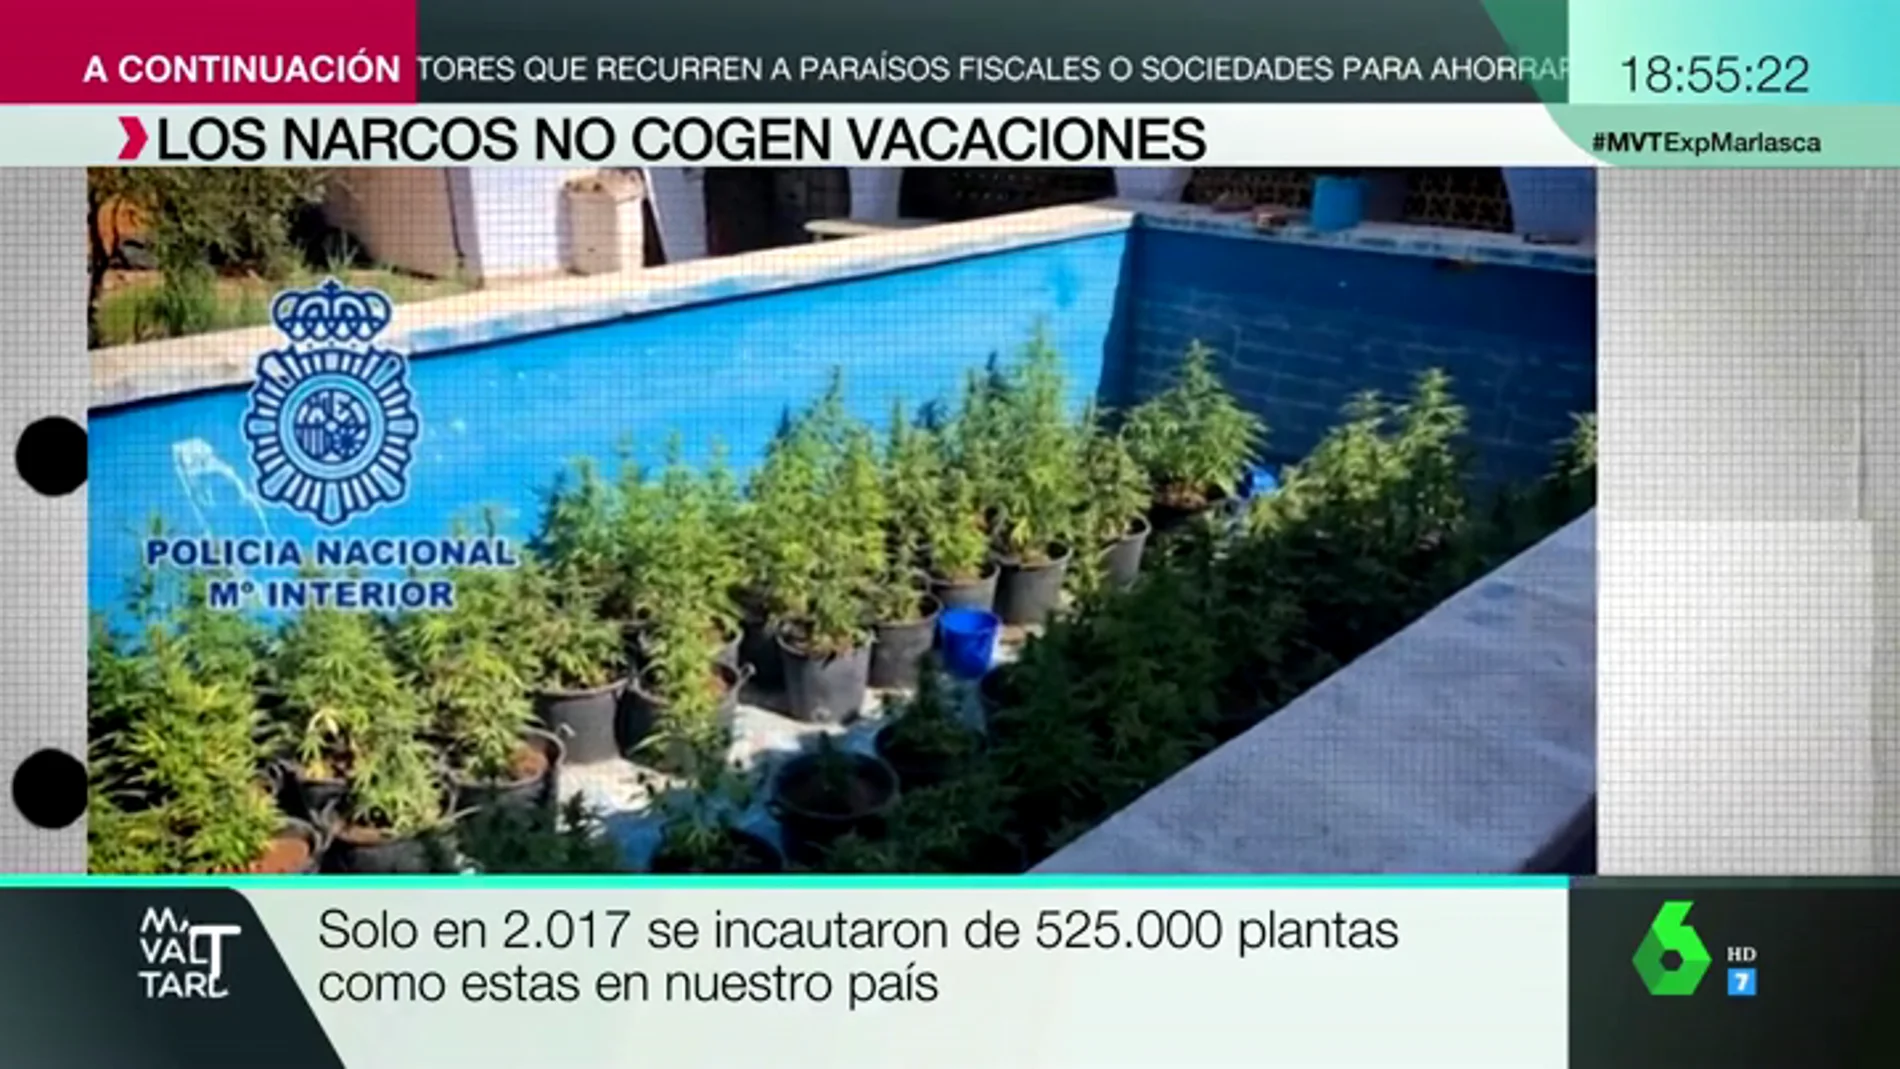 'Guarderías' marítimas y plantas de marihuana escondidas en una piscina: así actúan los narcos